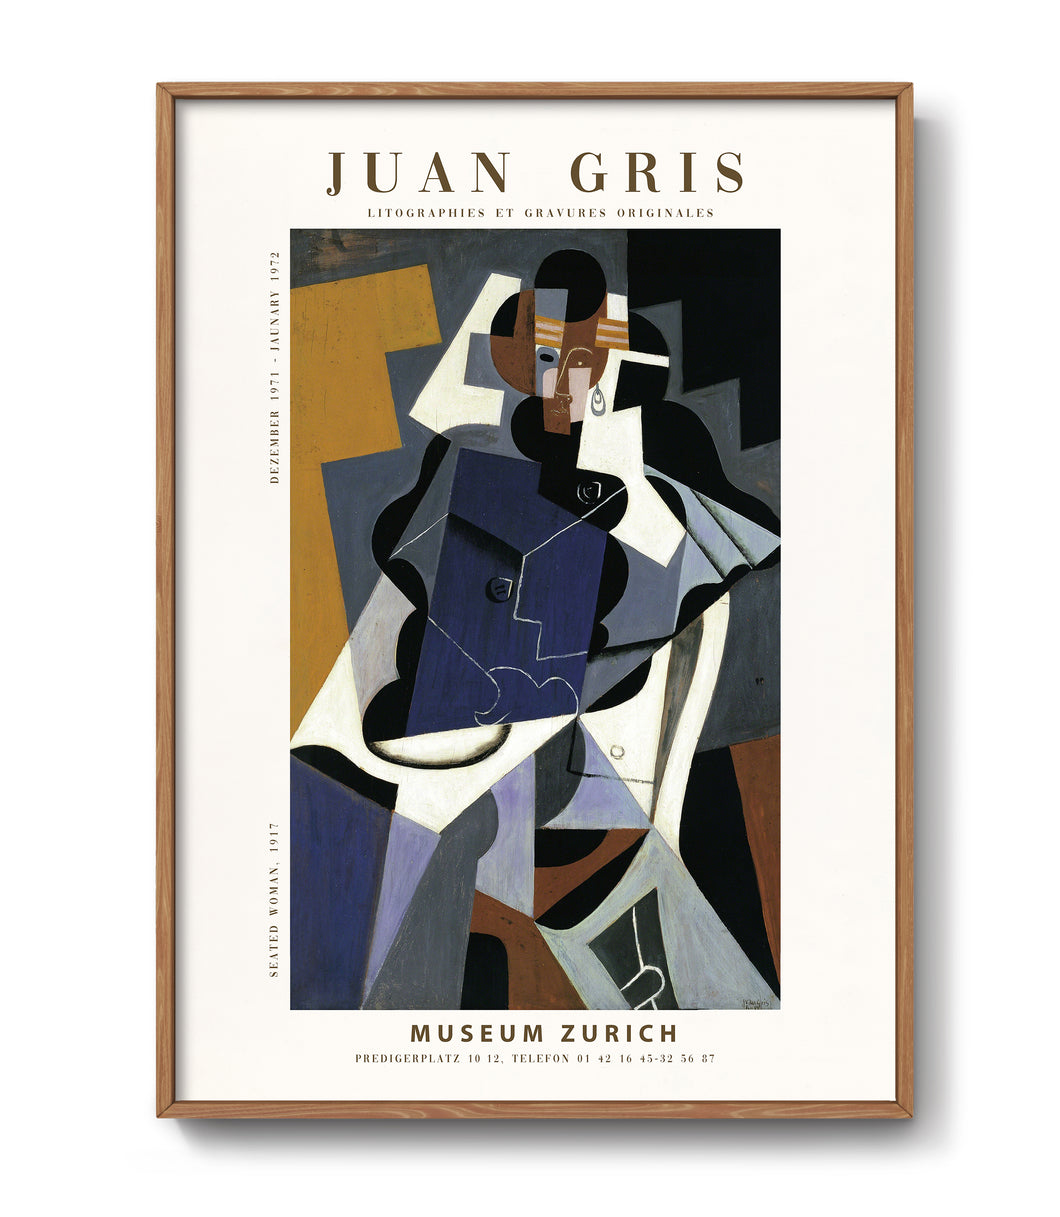 Juan Gris Exhibition Poster